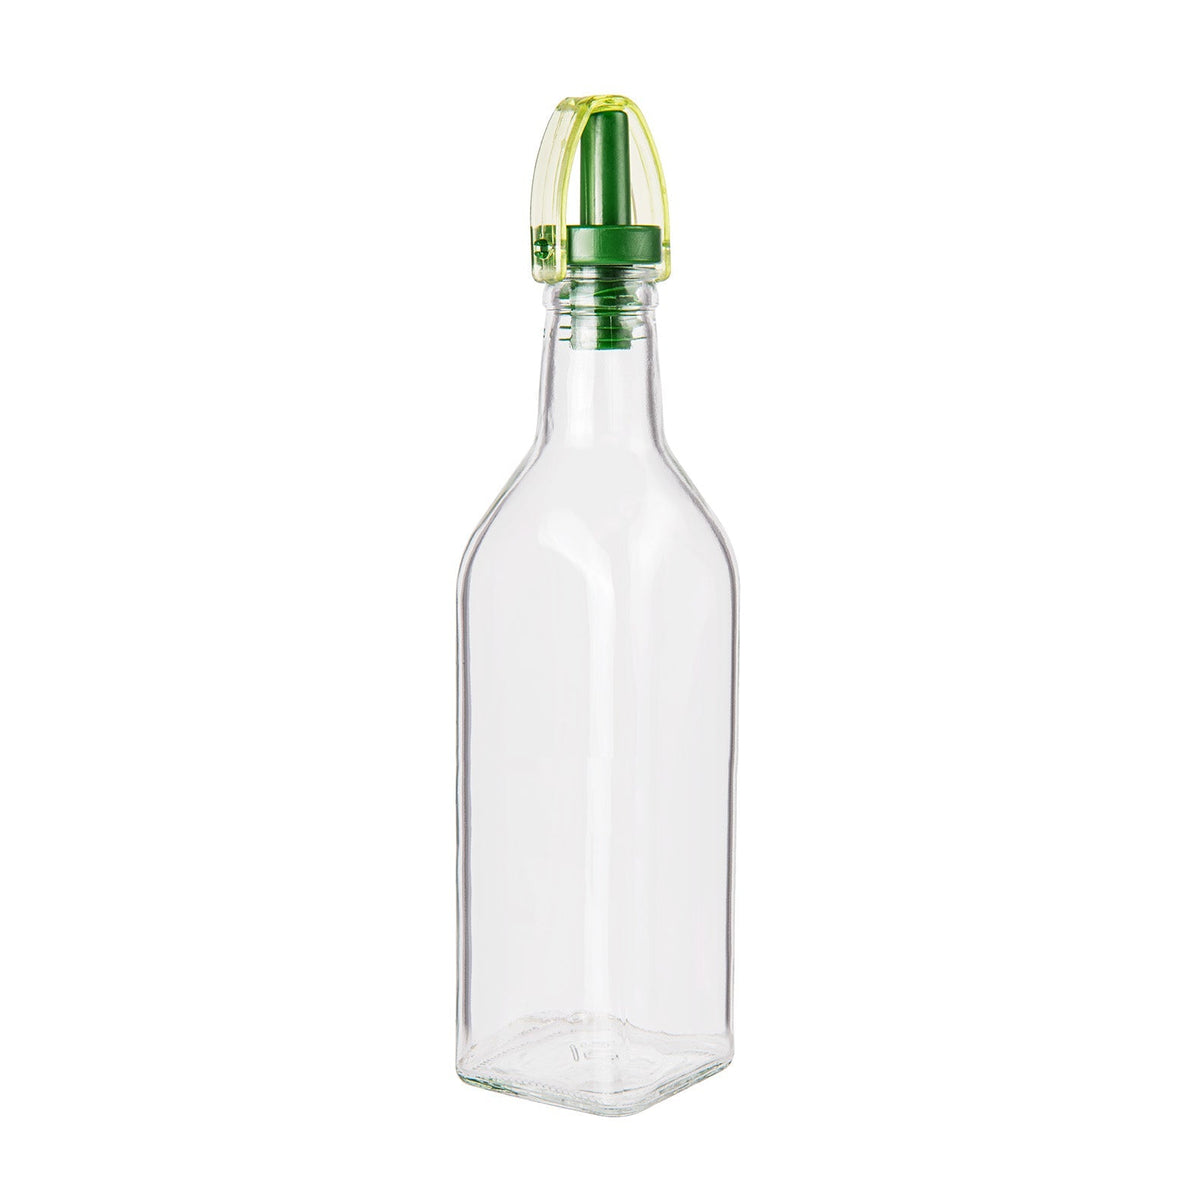 Γυαλί μπουκάλι με διανομέα πετρελαίου ή ξιδιού - 250ml